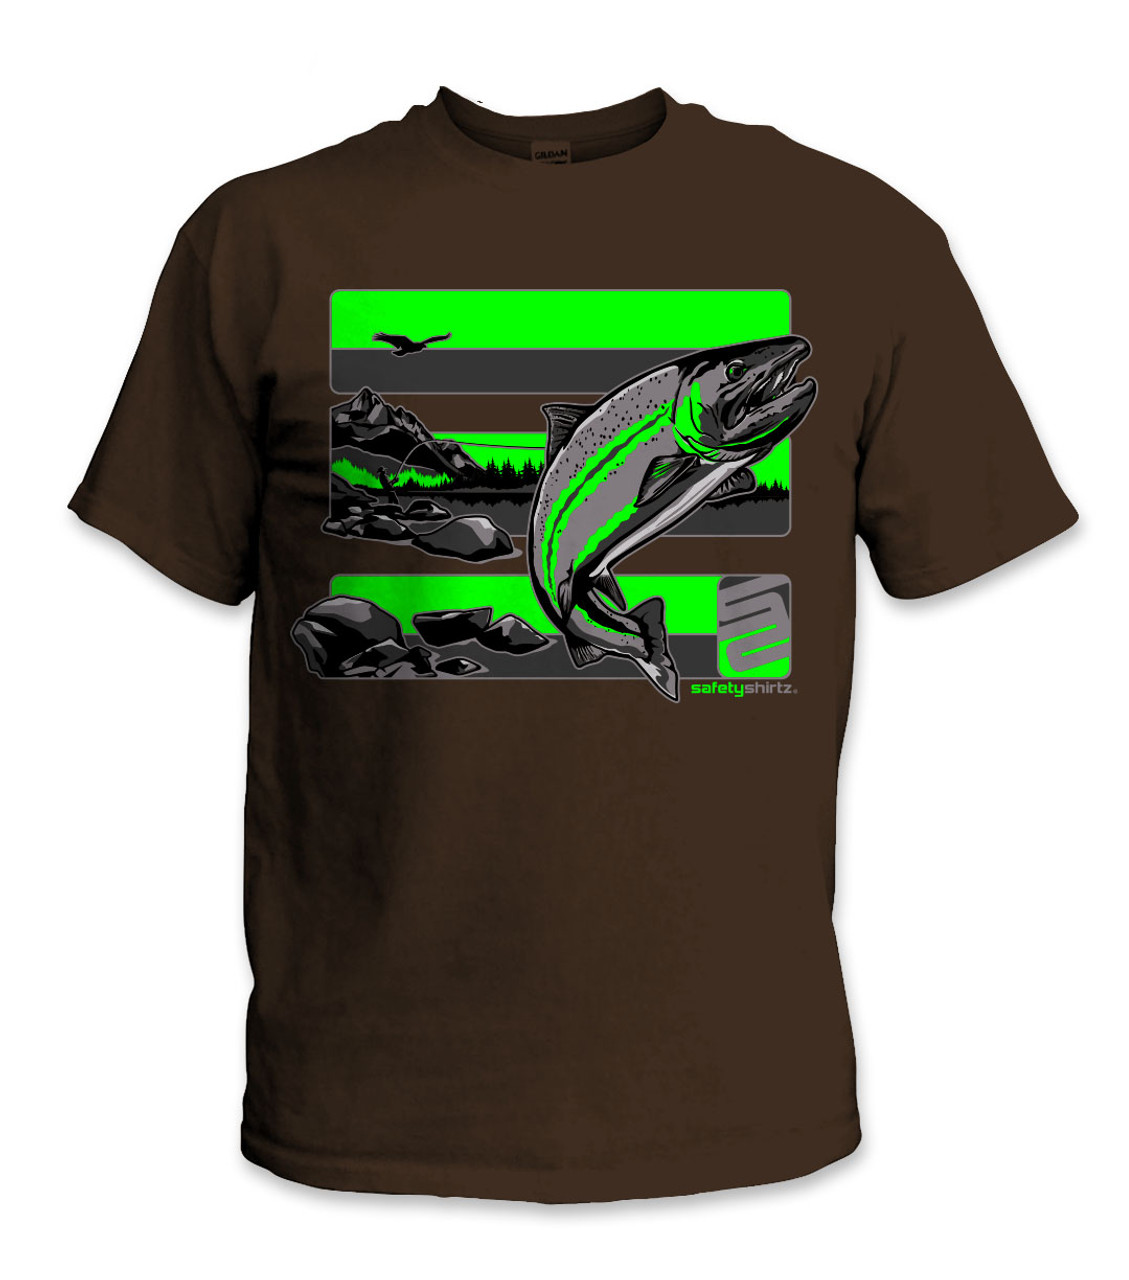 Steelhead Safety Shirt - Green/Reflective/Brown - Safetyshirtz